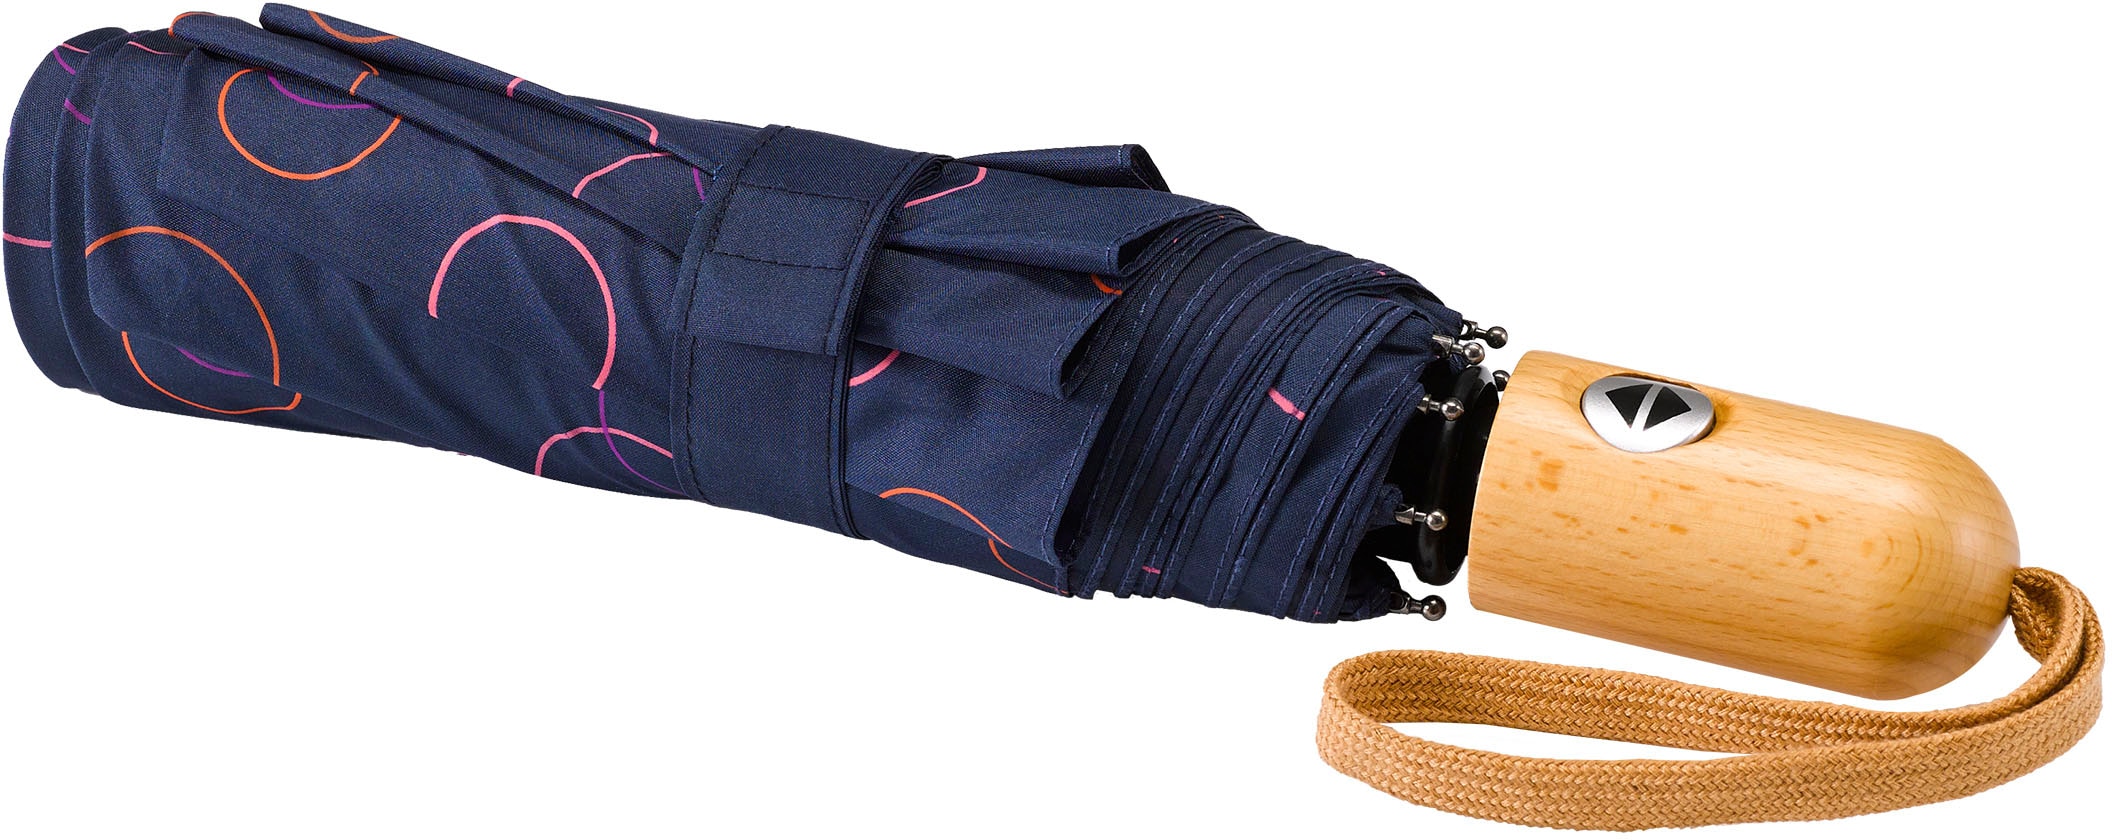 »Umwelt-Taschenschirm, marine, Taschenregenschirm pink« EuroSCHIRM® kaufen Kreise